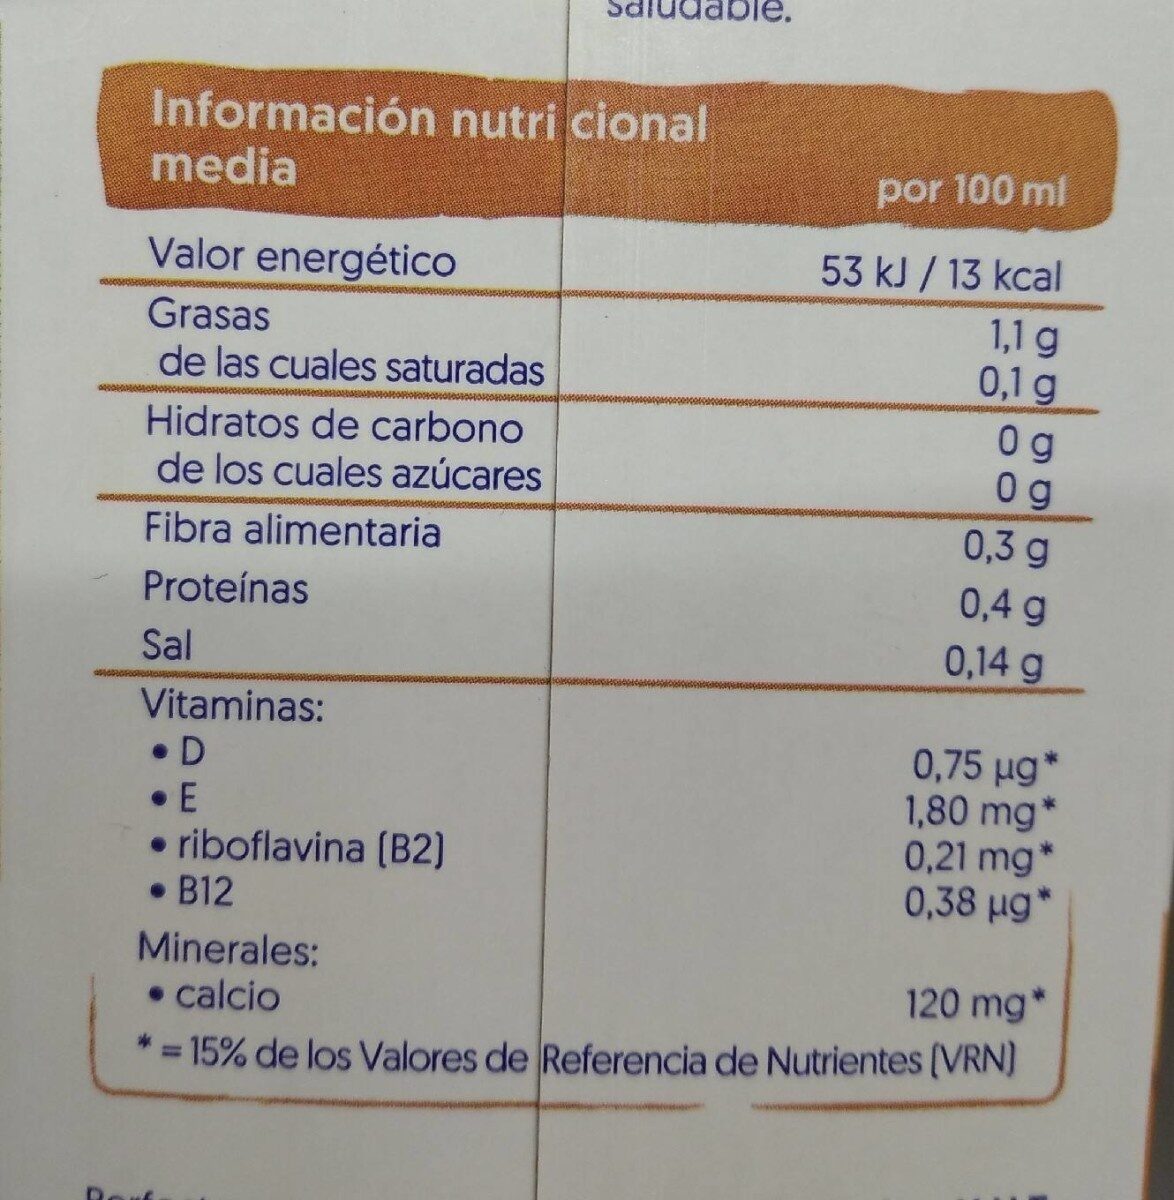 Almendras son azúcar - Nutrition facts - es